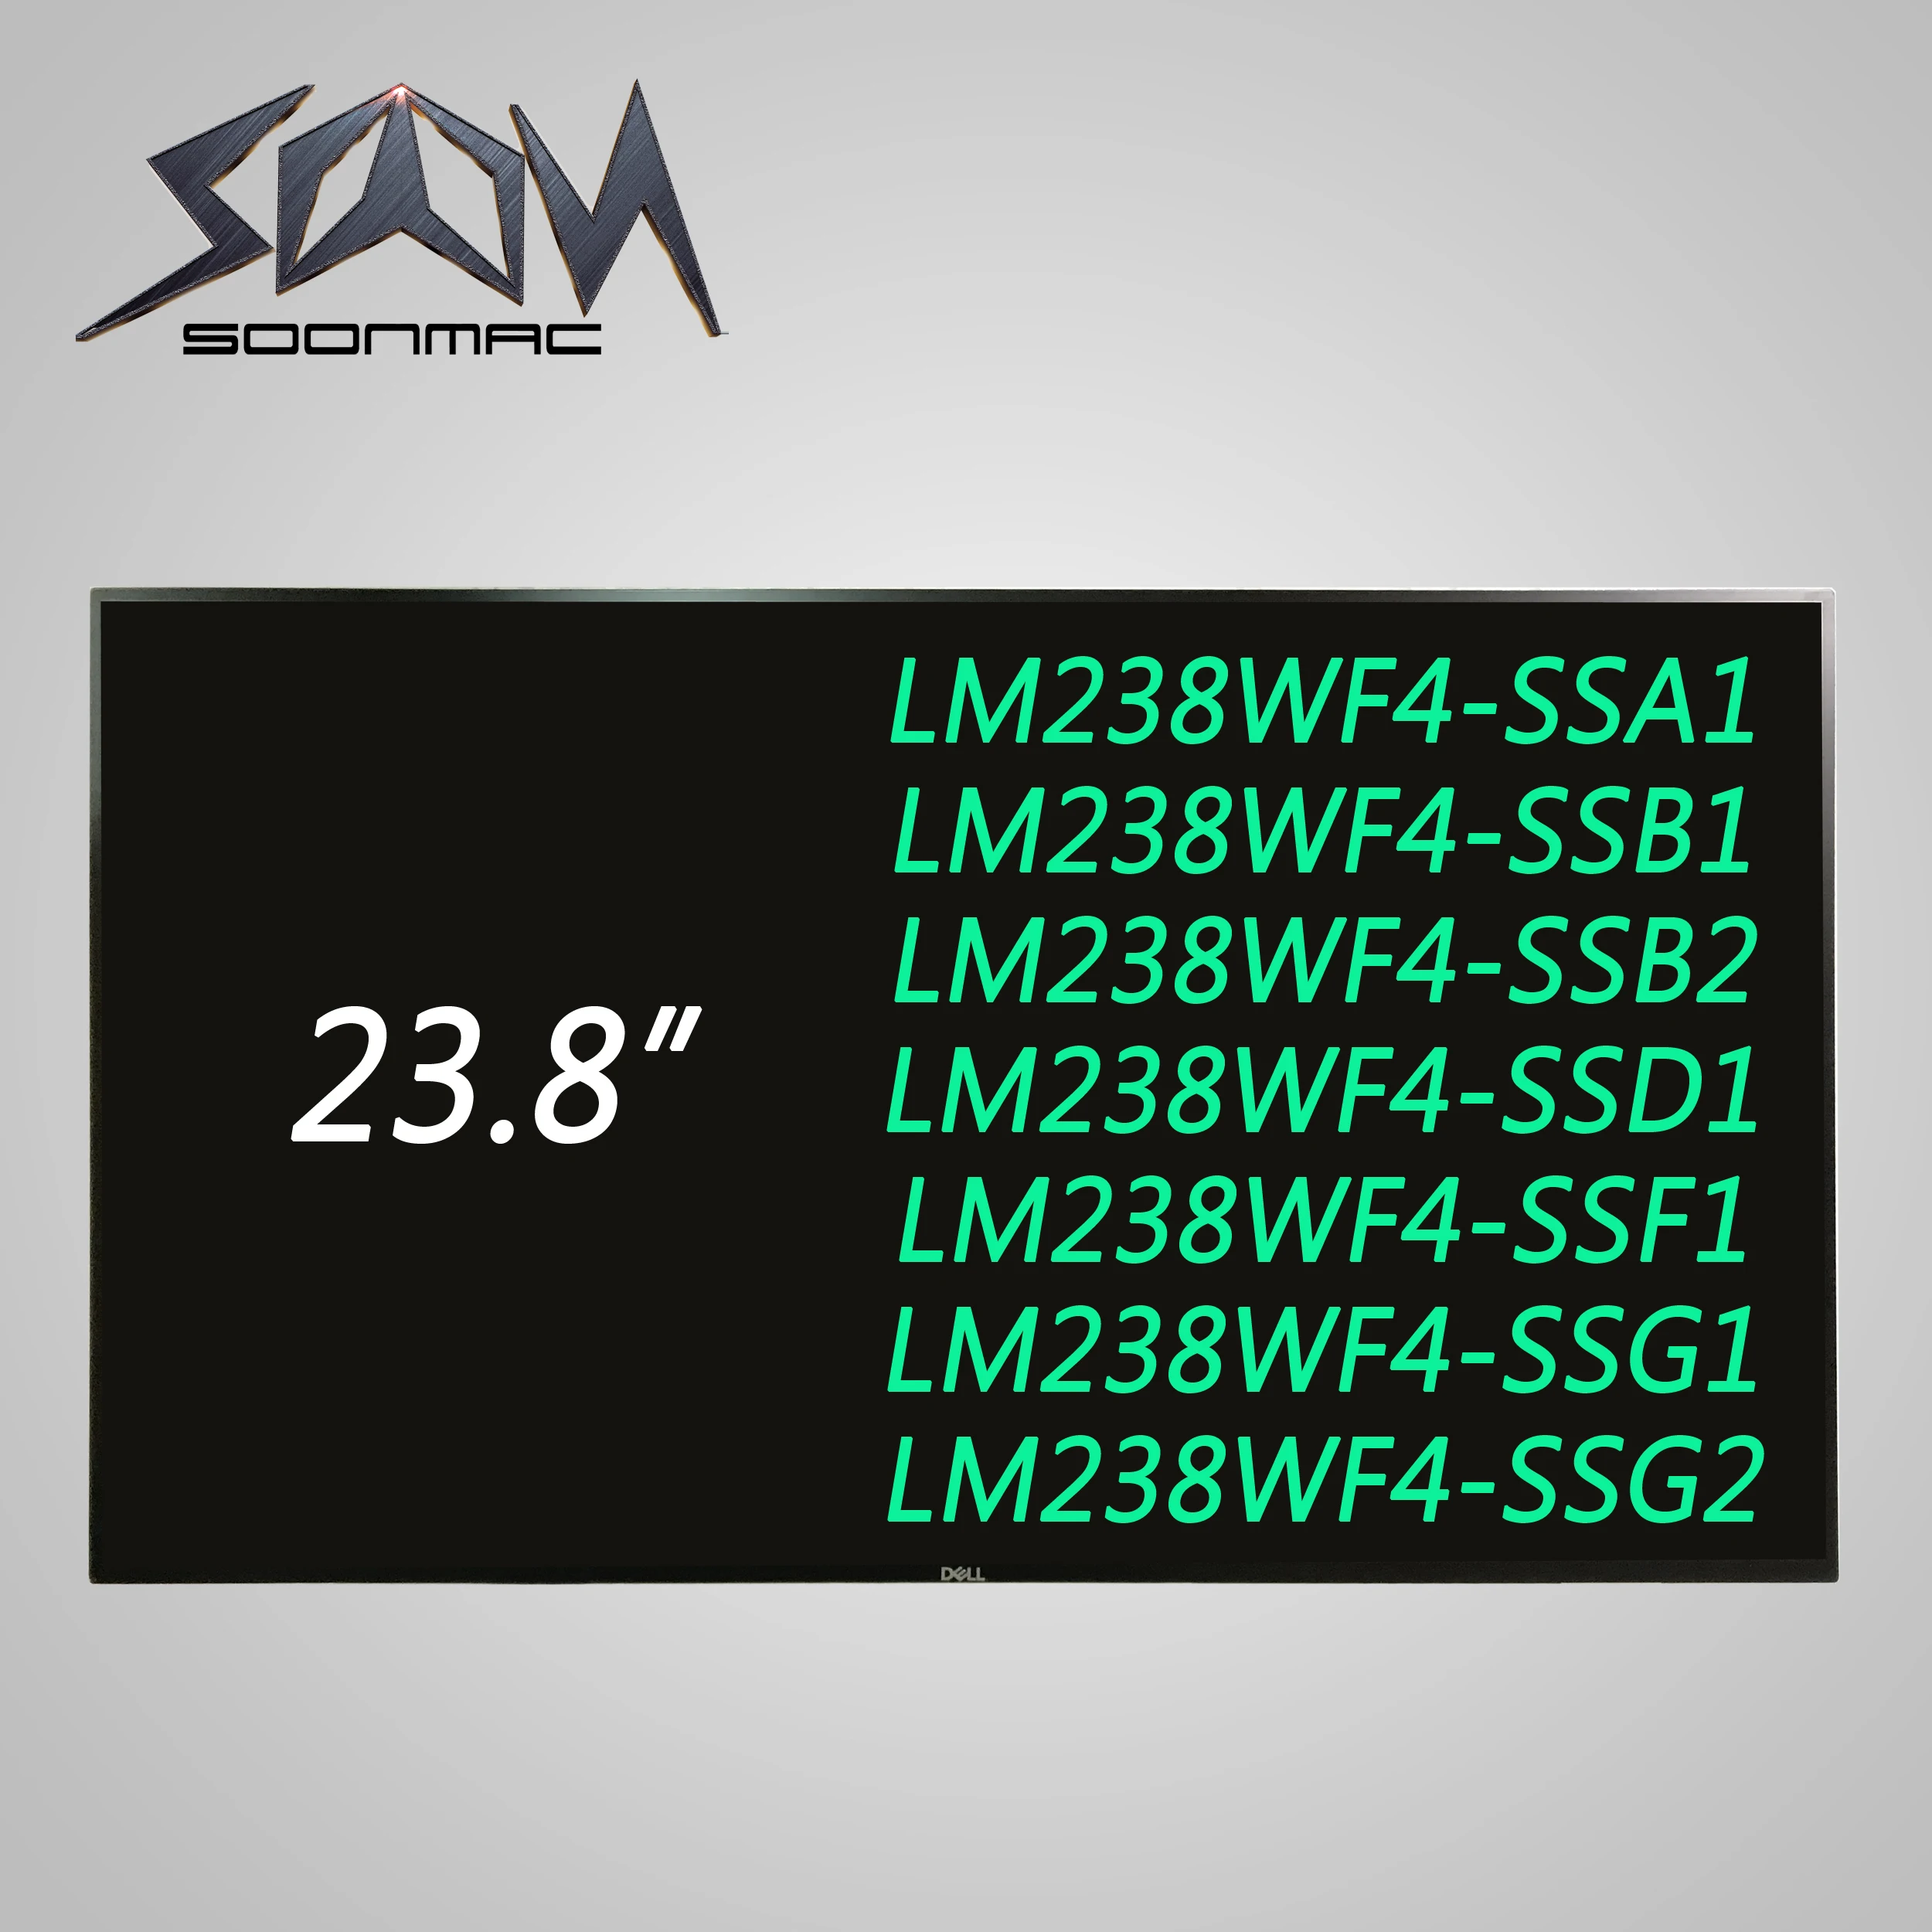  - 23, 8  LM238WF4 SSA1 SSB1 SSB2 SSD1 SSF1 SSG1 SSG2  HP EliteOne G4 DELL U2714